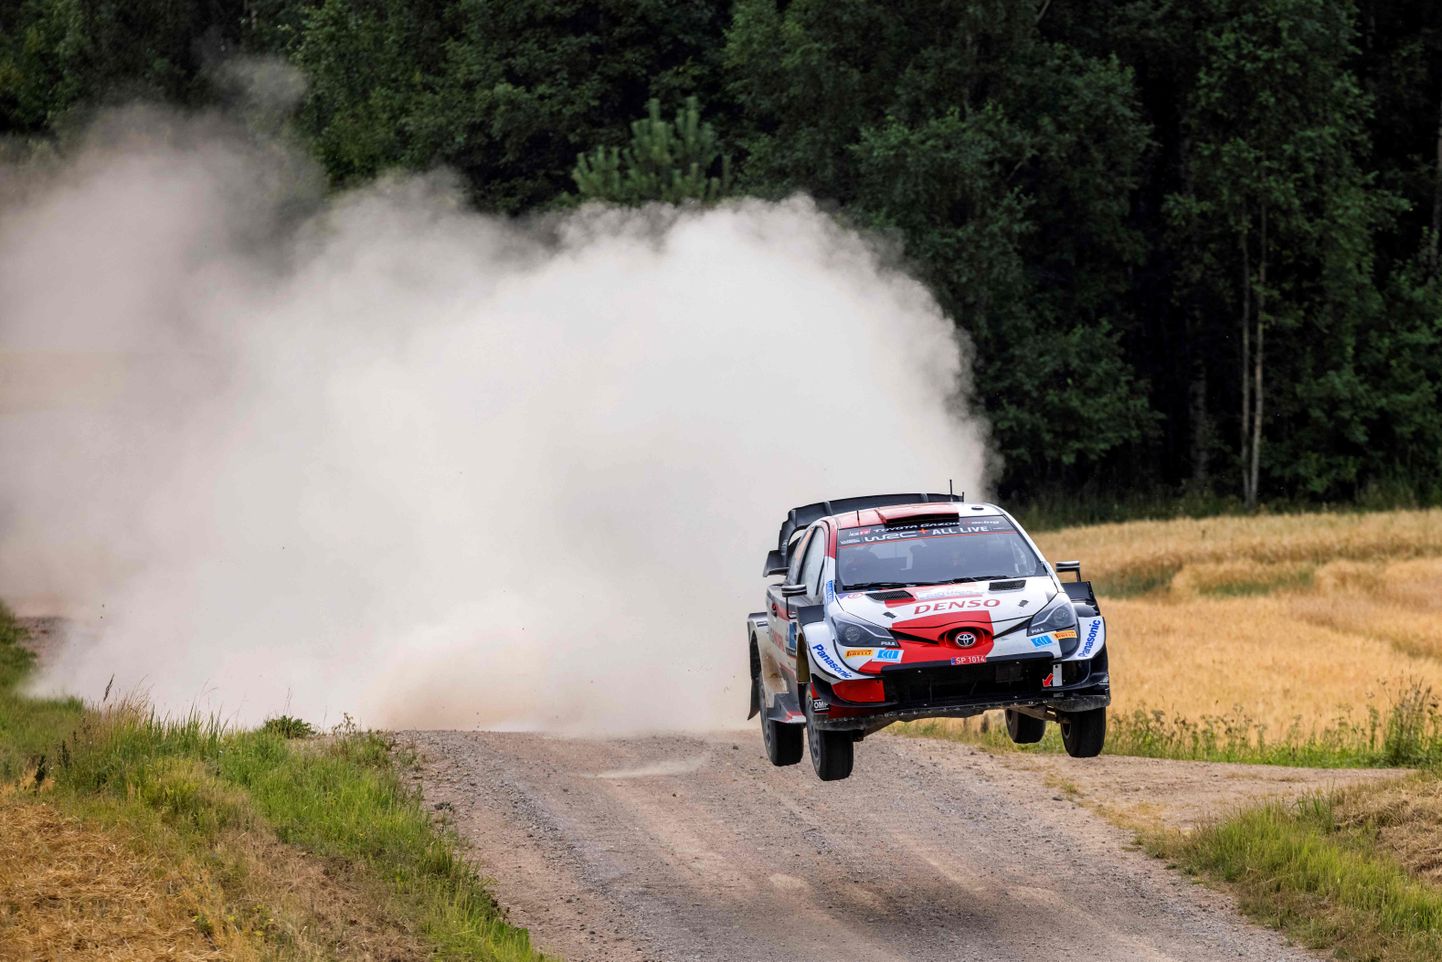 Pasaules rallija čempionāta (WRC) posms Igaunijā, kas norisinās šonedēļ. Ilustratīvs attēls.